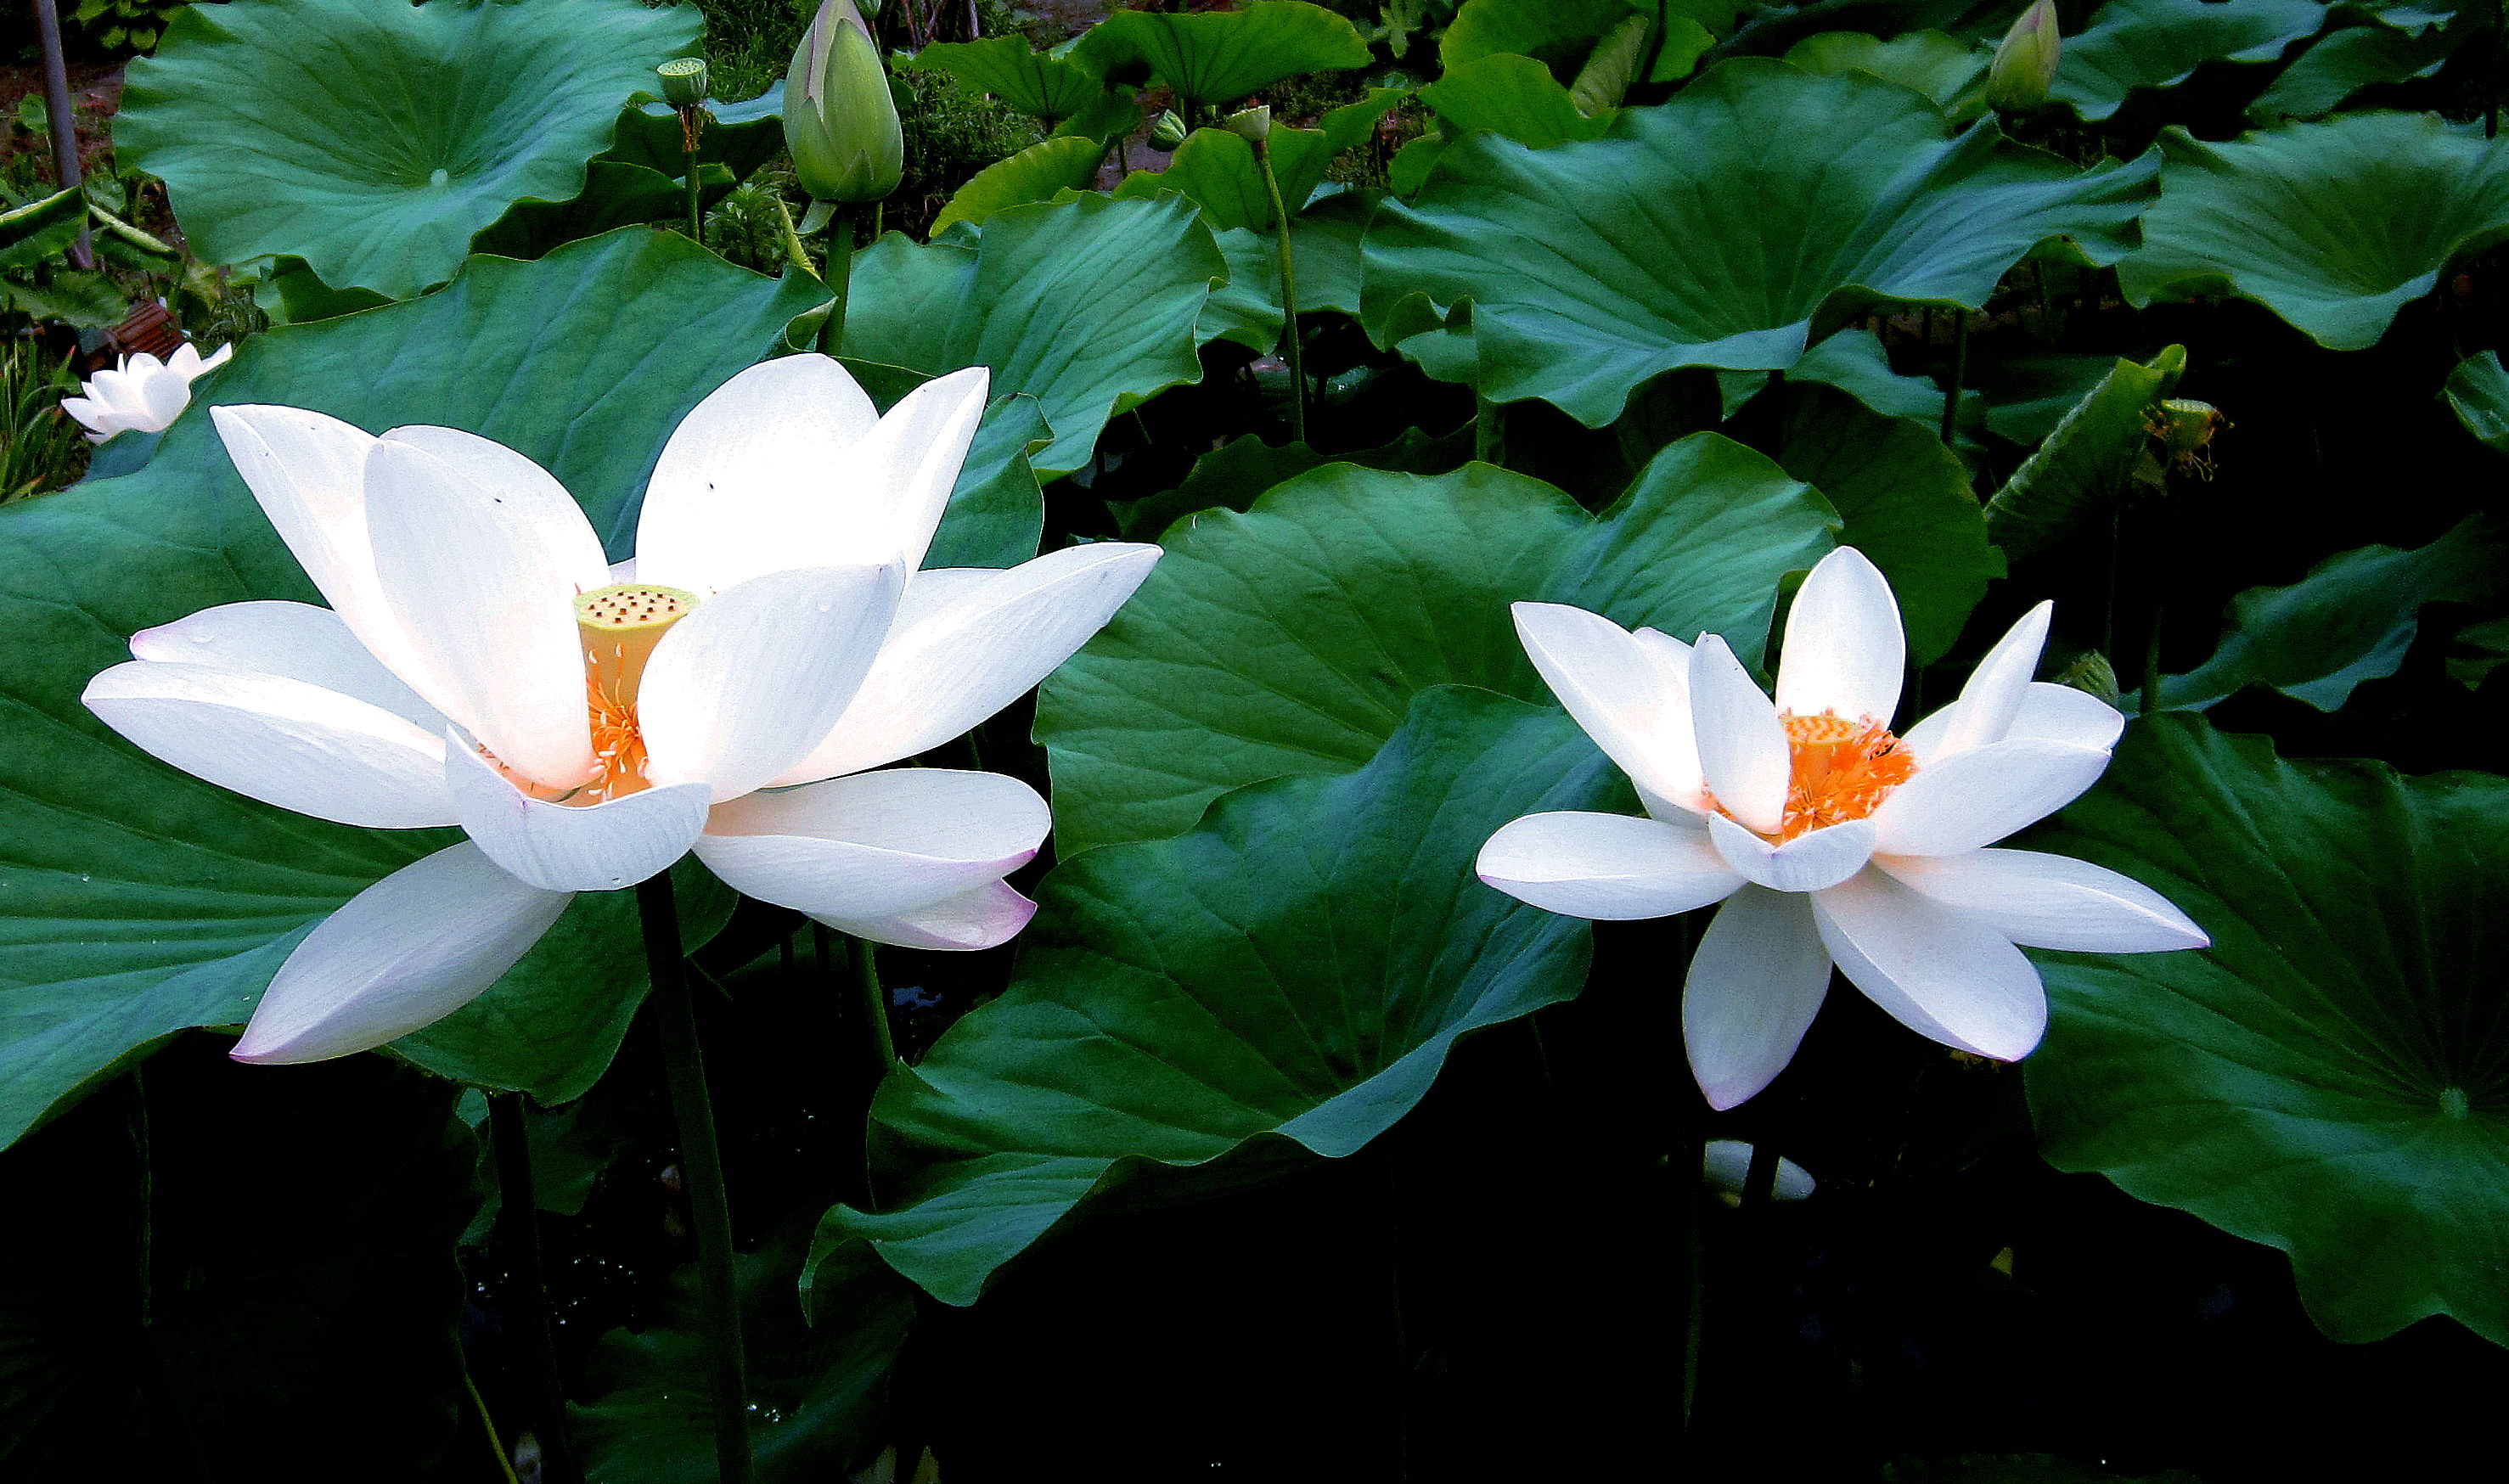 超过 100 张关于“白莲”和“白莲花”的免费图片 - Pixabay